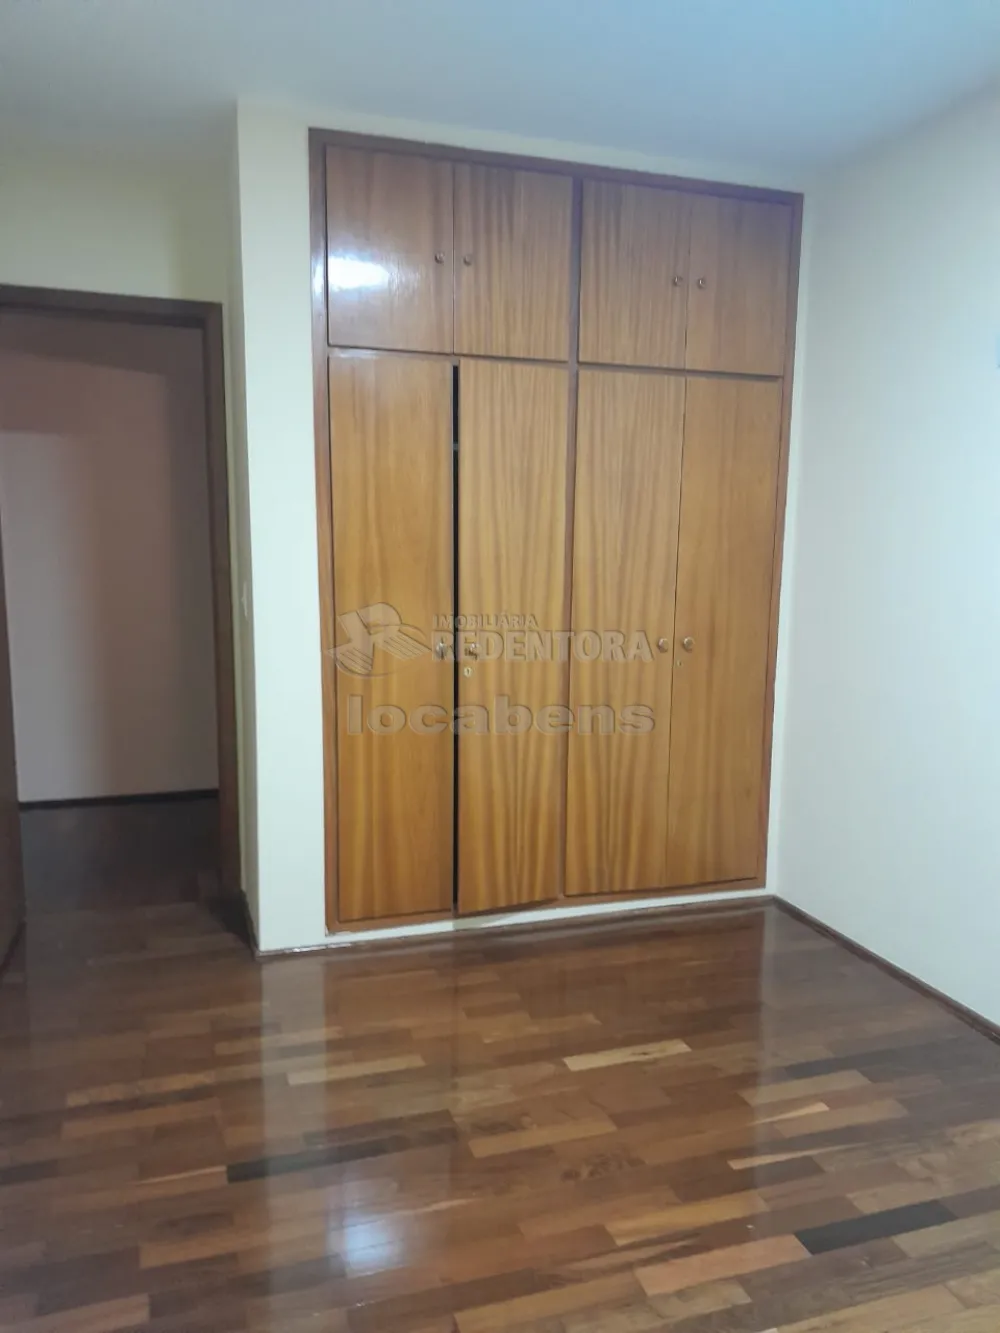 Alugar Apartamento / Padrão em São José do Rio Preto apenas R$ 700,00 - Foto 5